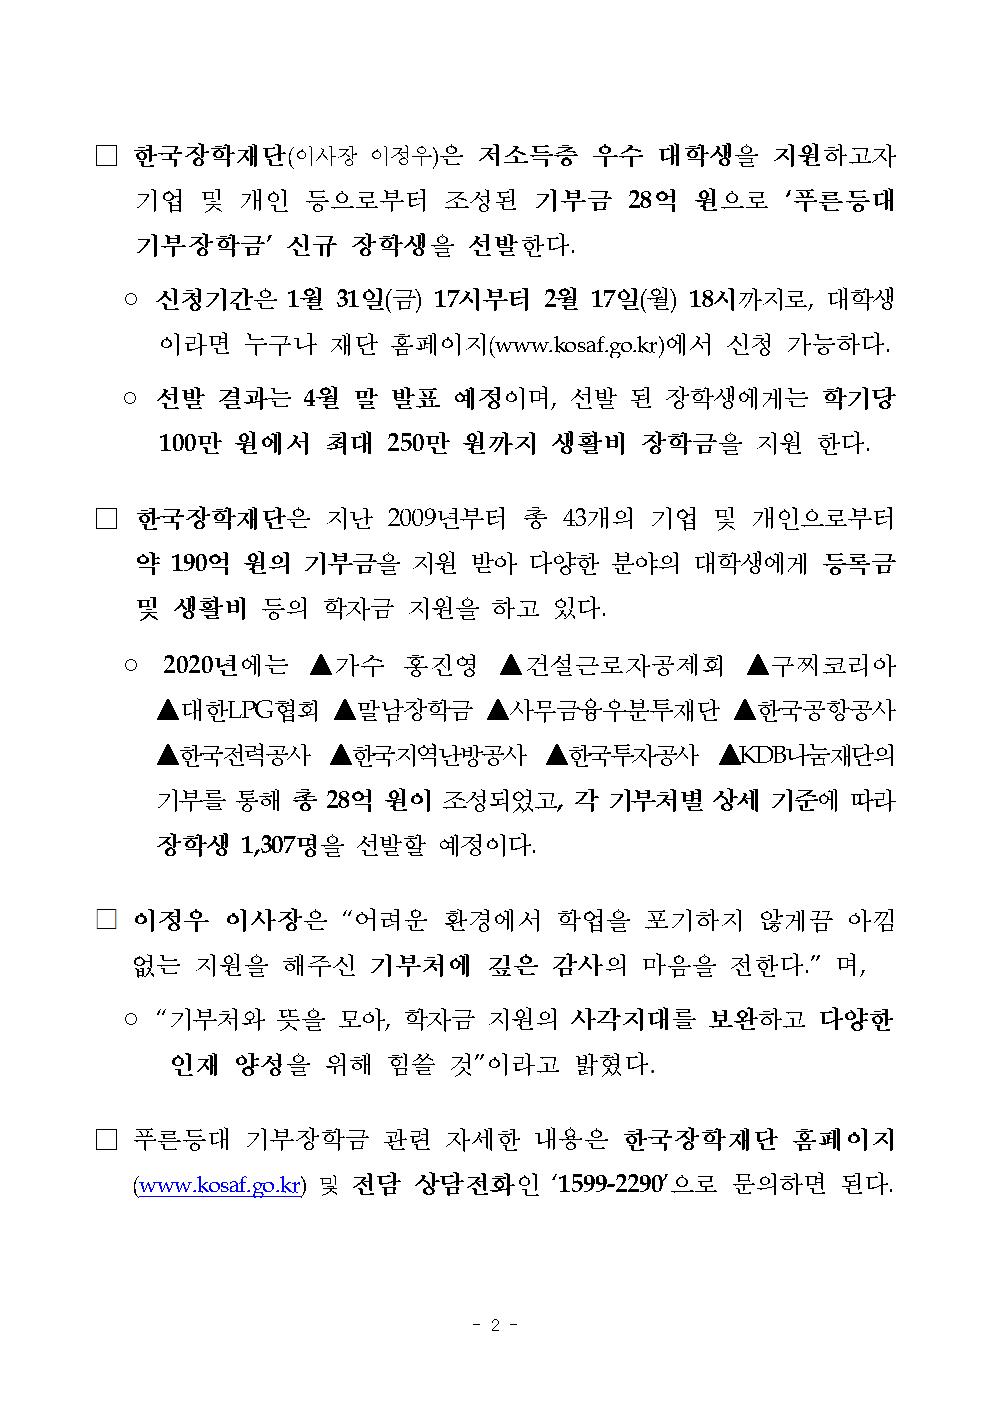 01-30(목)보도자료 한국장학재단 2020년 1학기 푸른등대 기부장학금 신청002.jpg